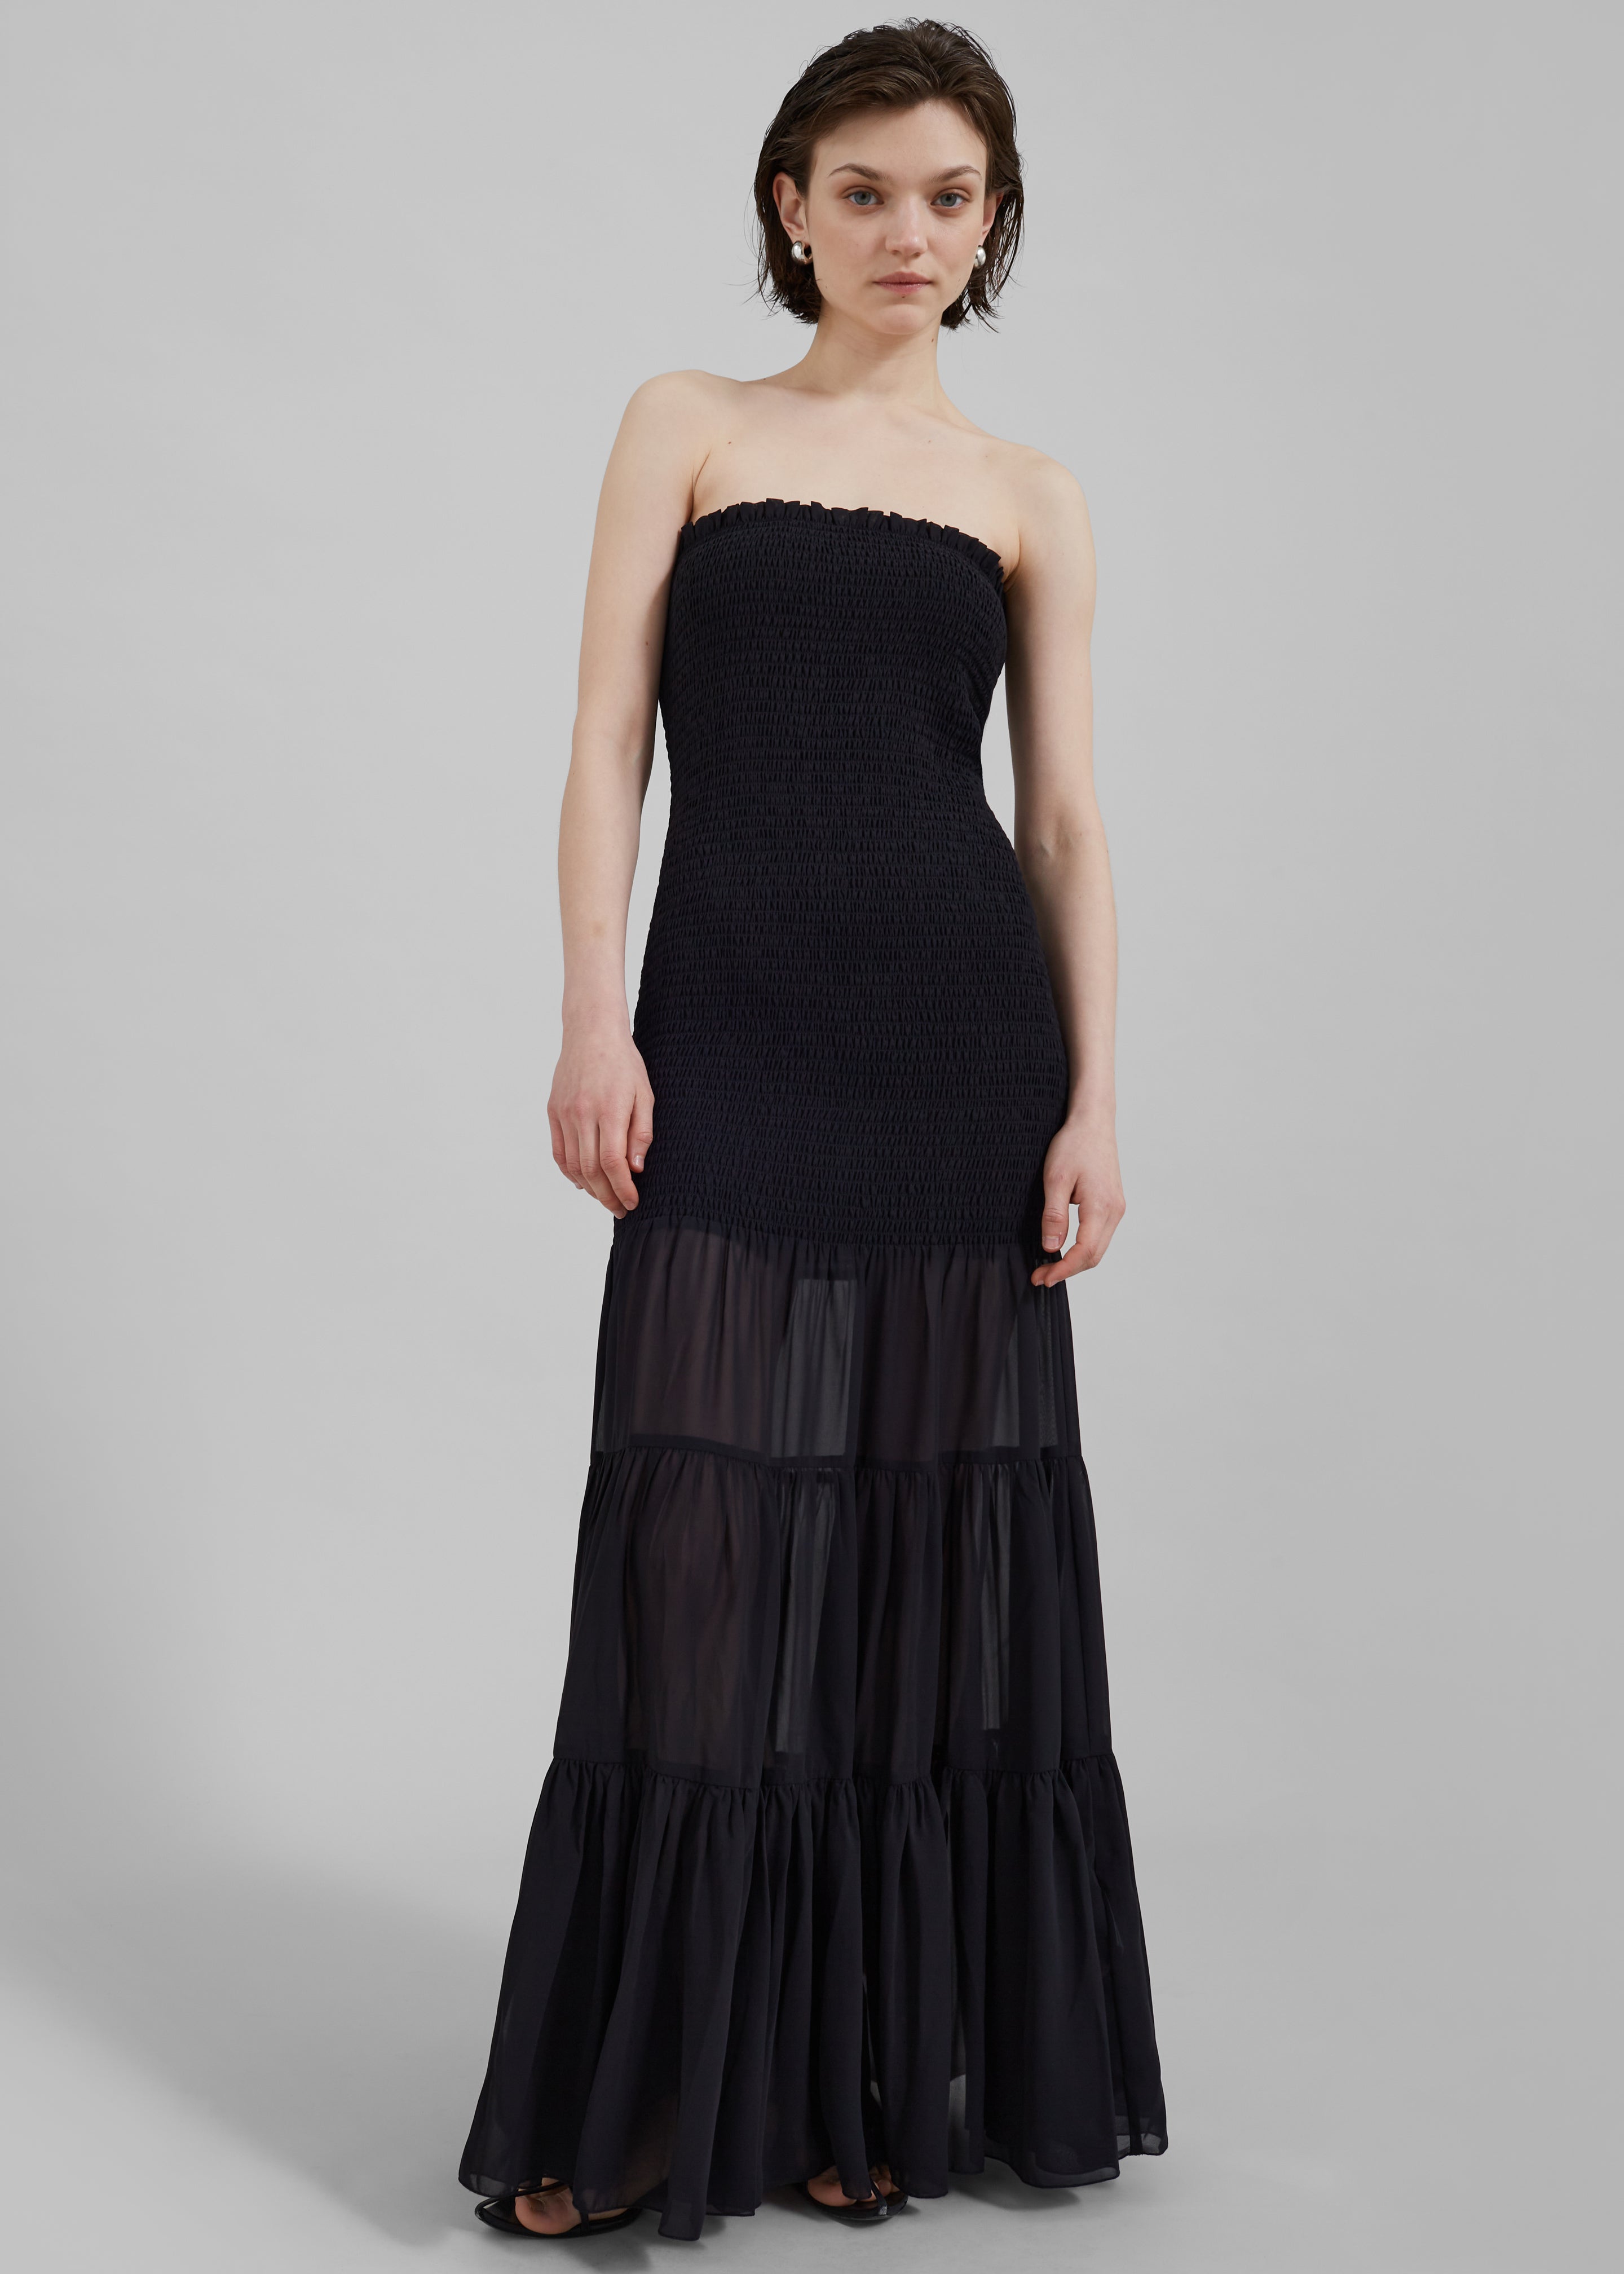 Rotate Chiffon Strapless Dress - Black - 2